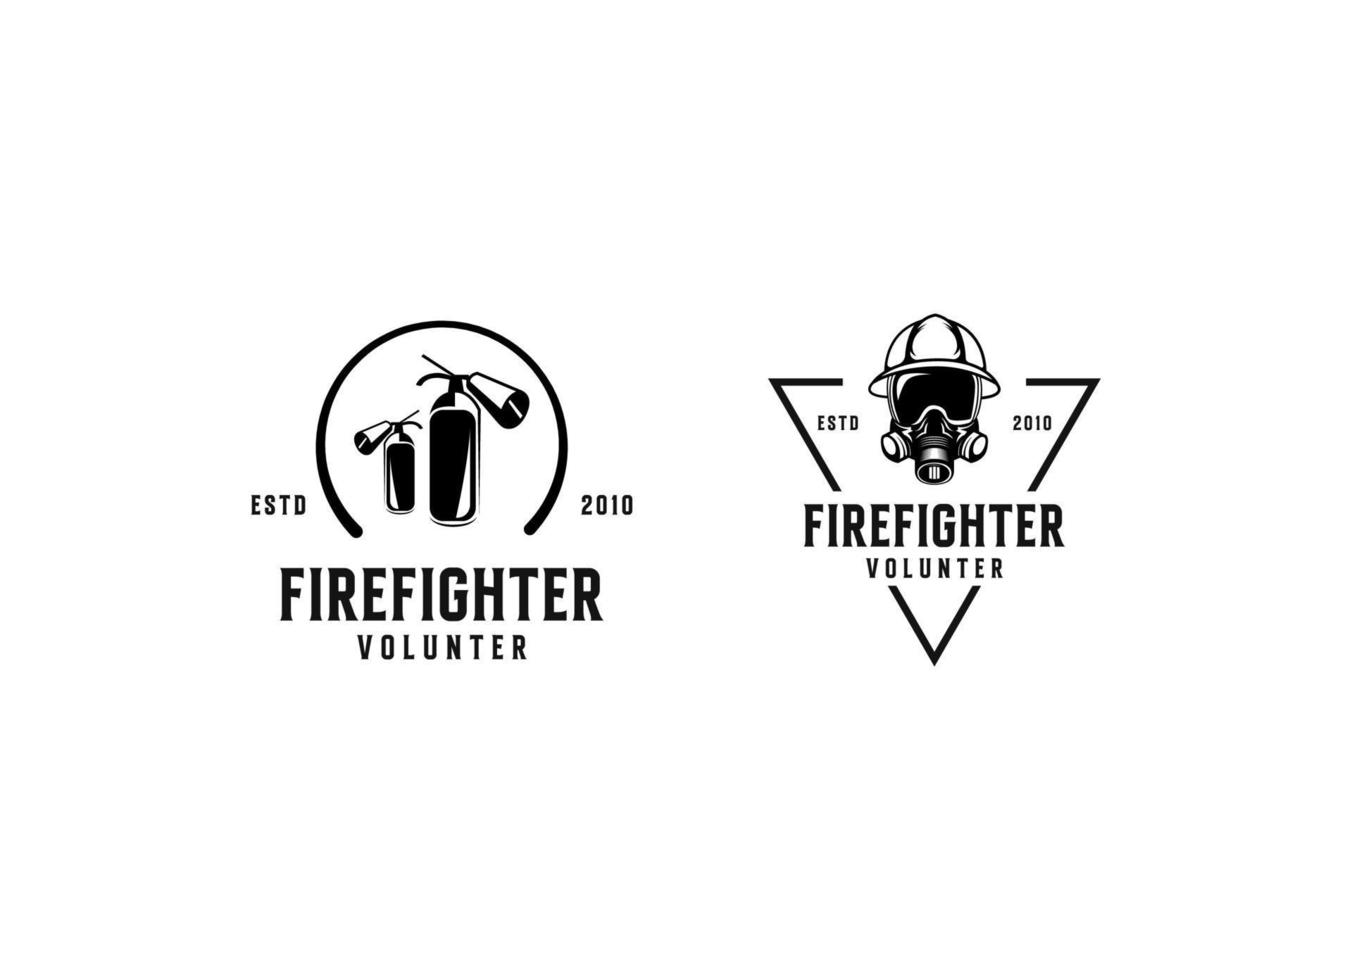 logotipos del departamento de bomberos, logotipo de estilo moderno y vintage vector